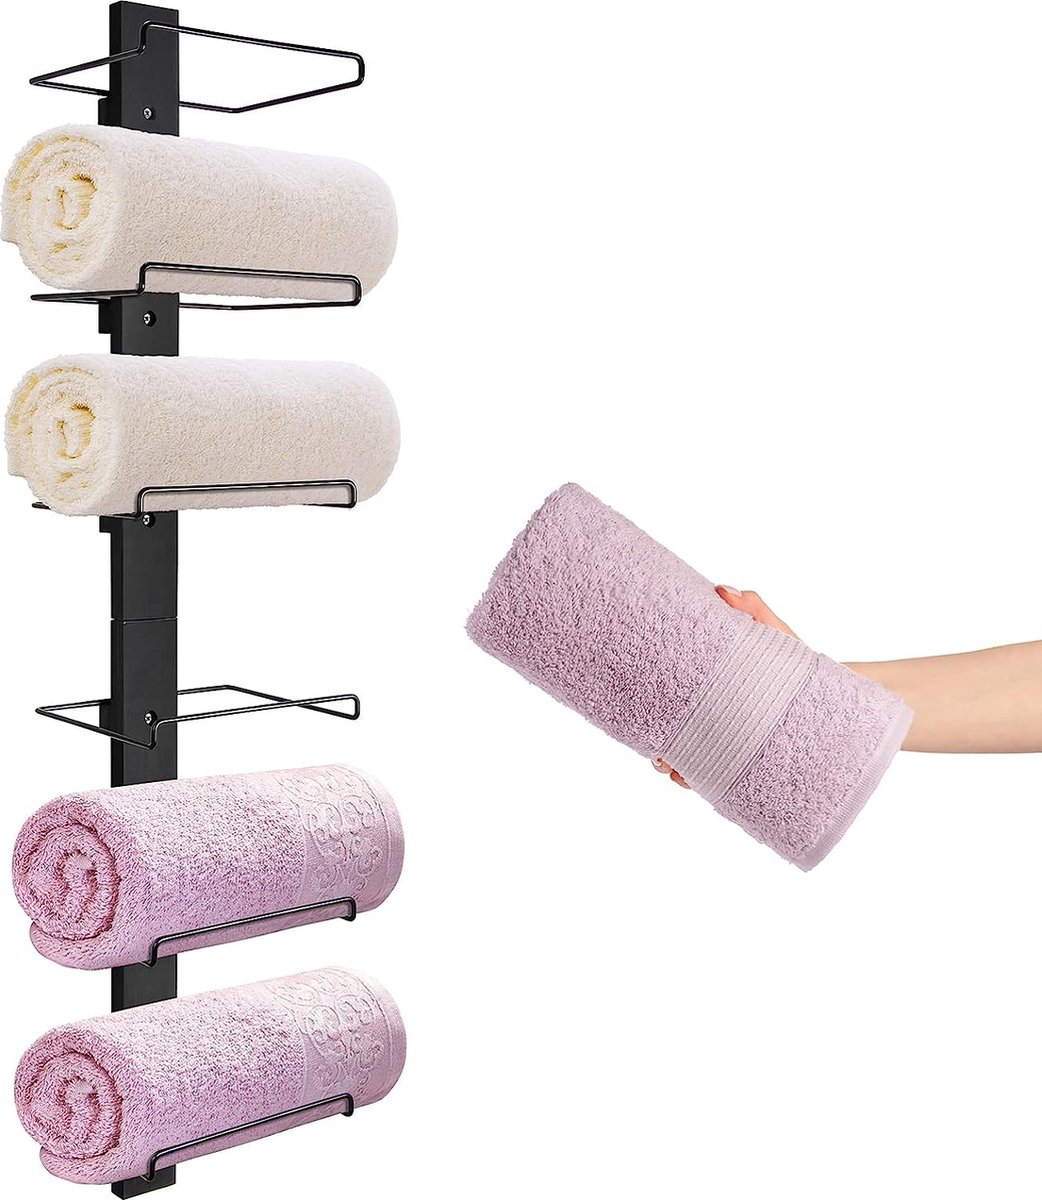 Praktische handdoekhouder zwart - roestvrij handdoekenrek muur voor badkamer met zes vakken - handdoekstang van metaal en hout - ruimtebesparende badkameraccessoires voor wandmontage